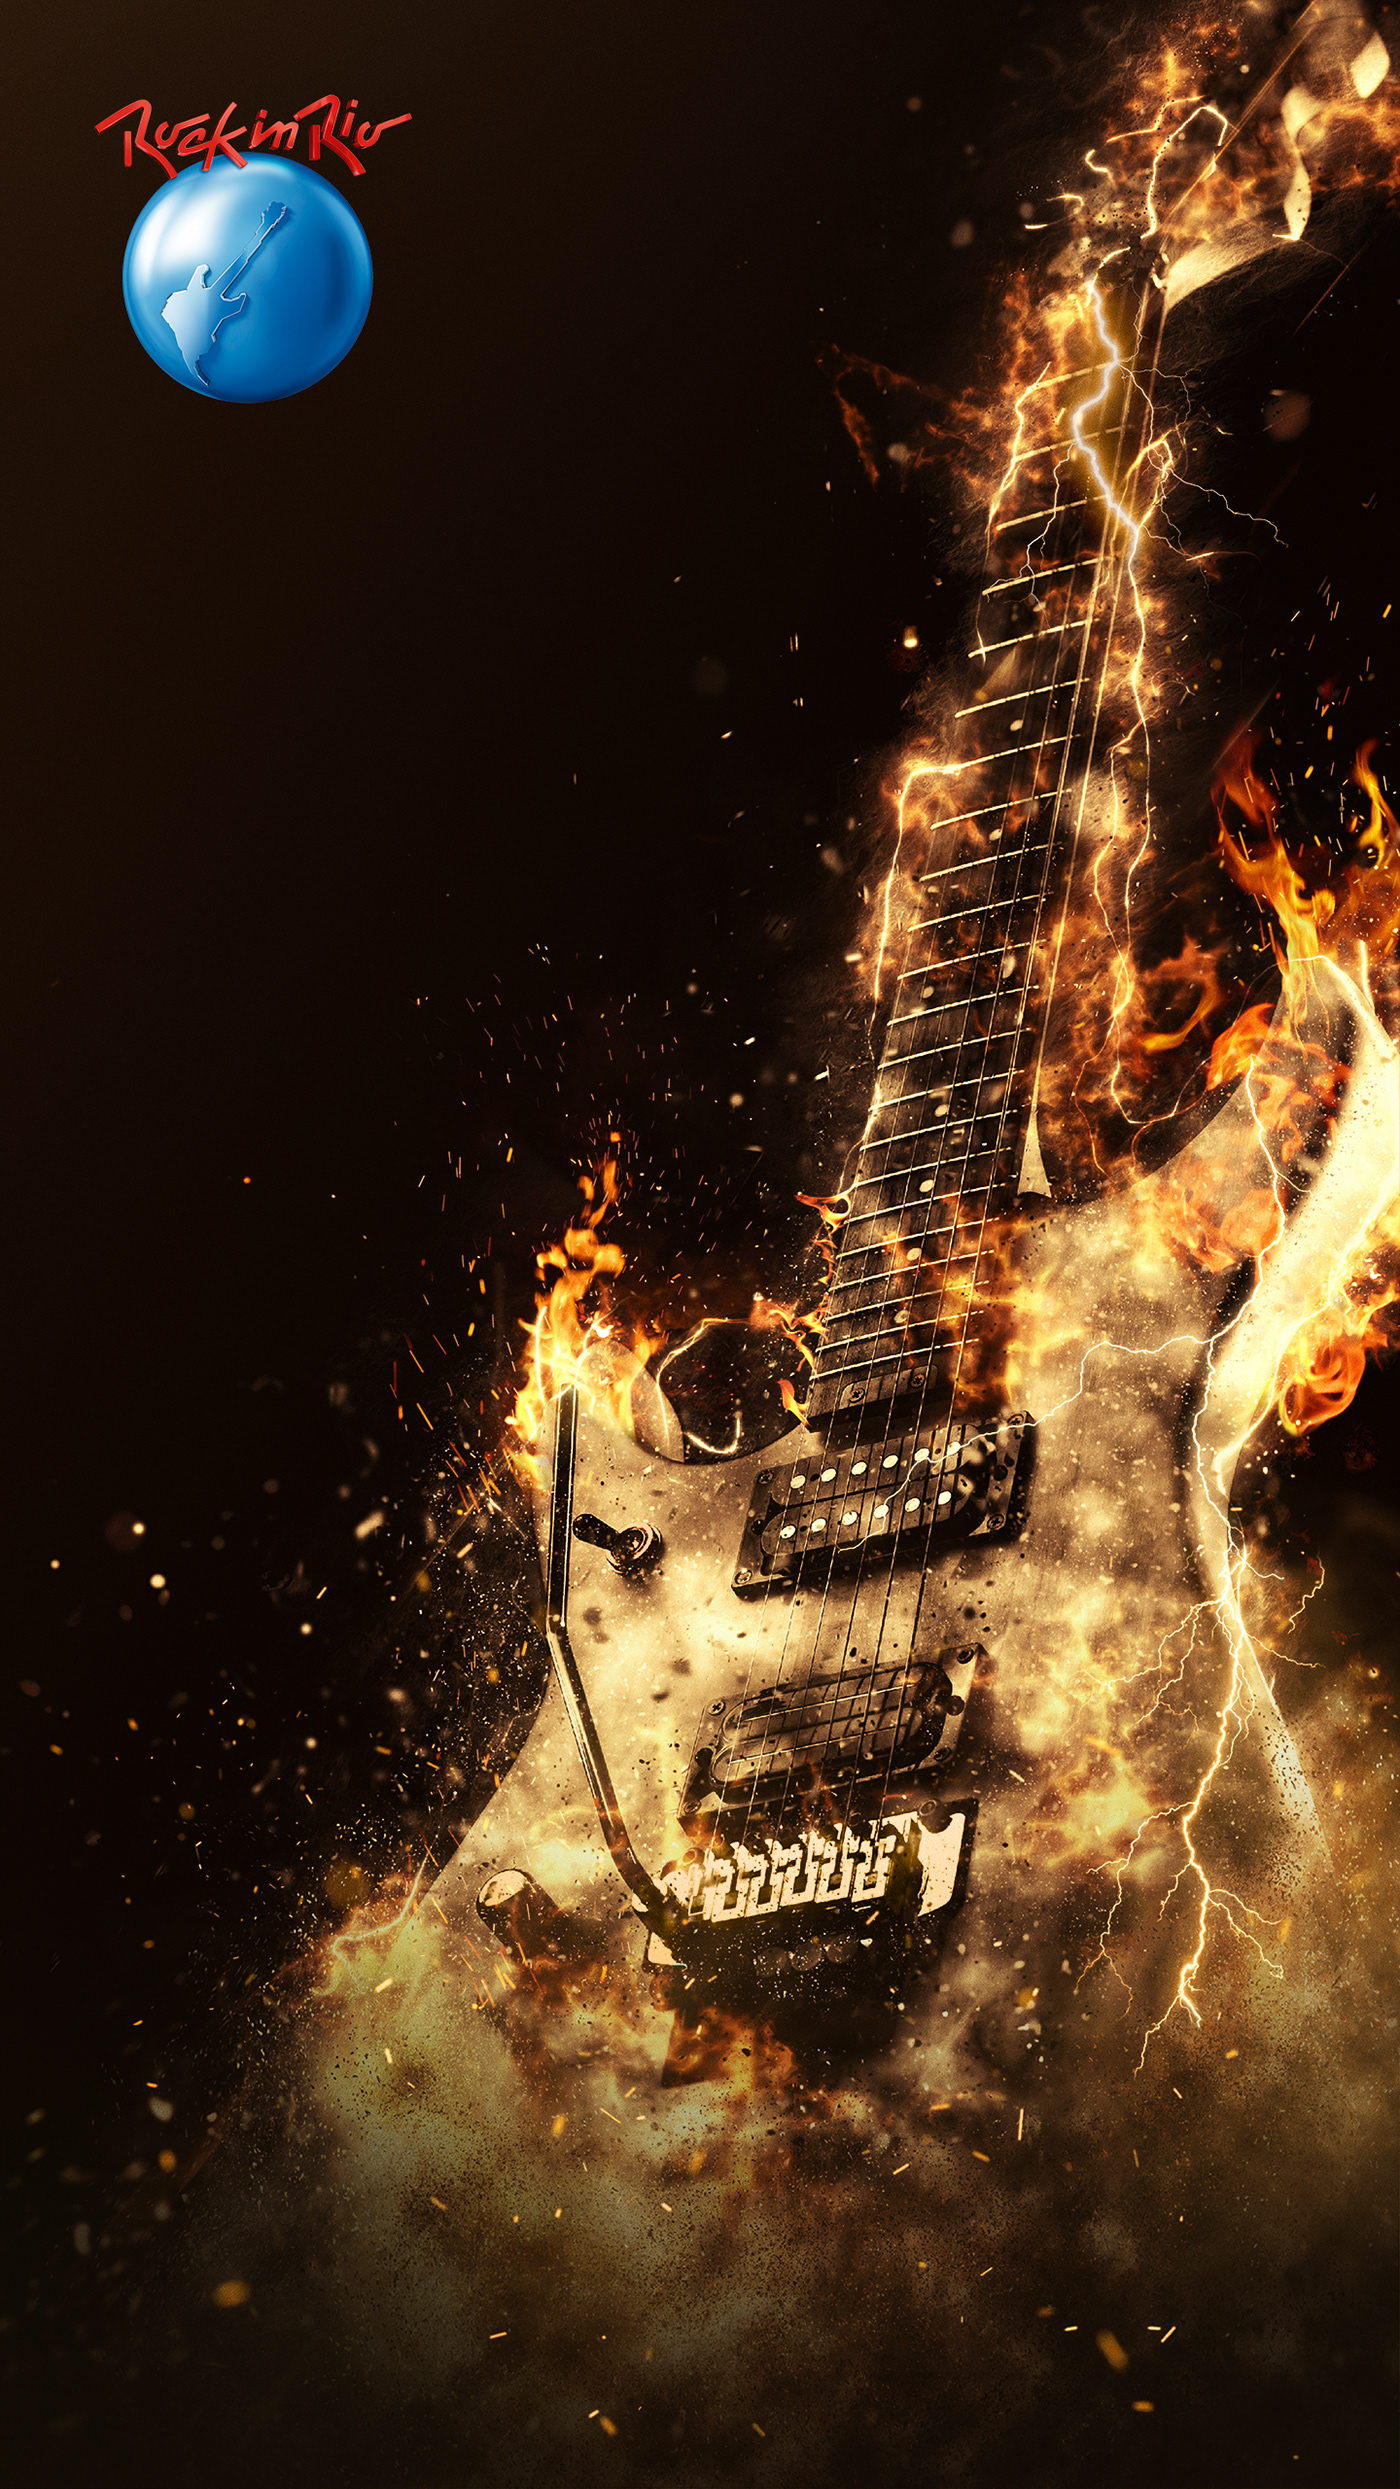 Adobe Portfolio guitar Guitarra metal rockinrio rir2019 fogo motion